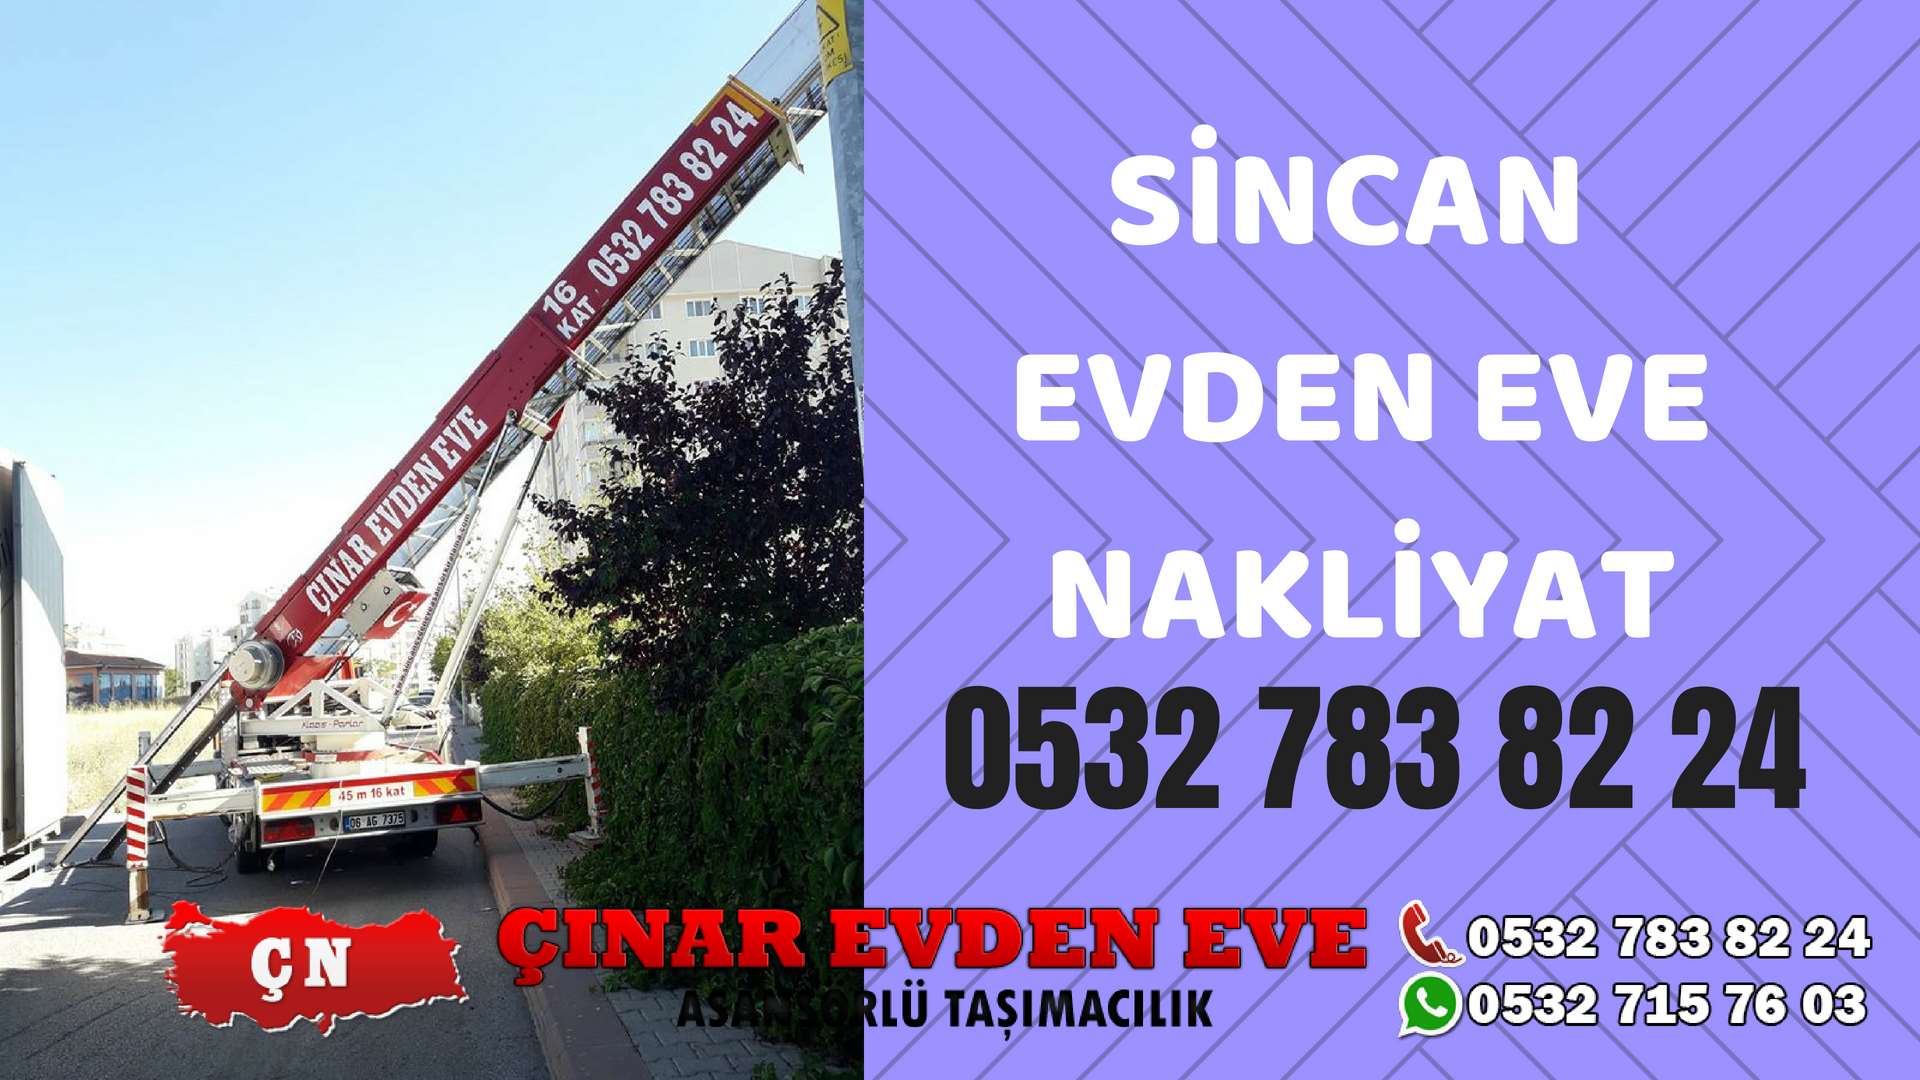 Ankara Şereflikoçhisar Sincan Evden Eve Nakliyat, Asansörlü Taşıma Çınar Nakliyat Sincan 0532 715 76 03